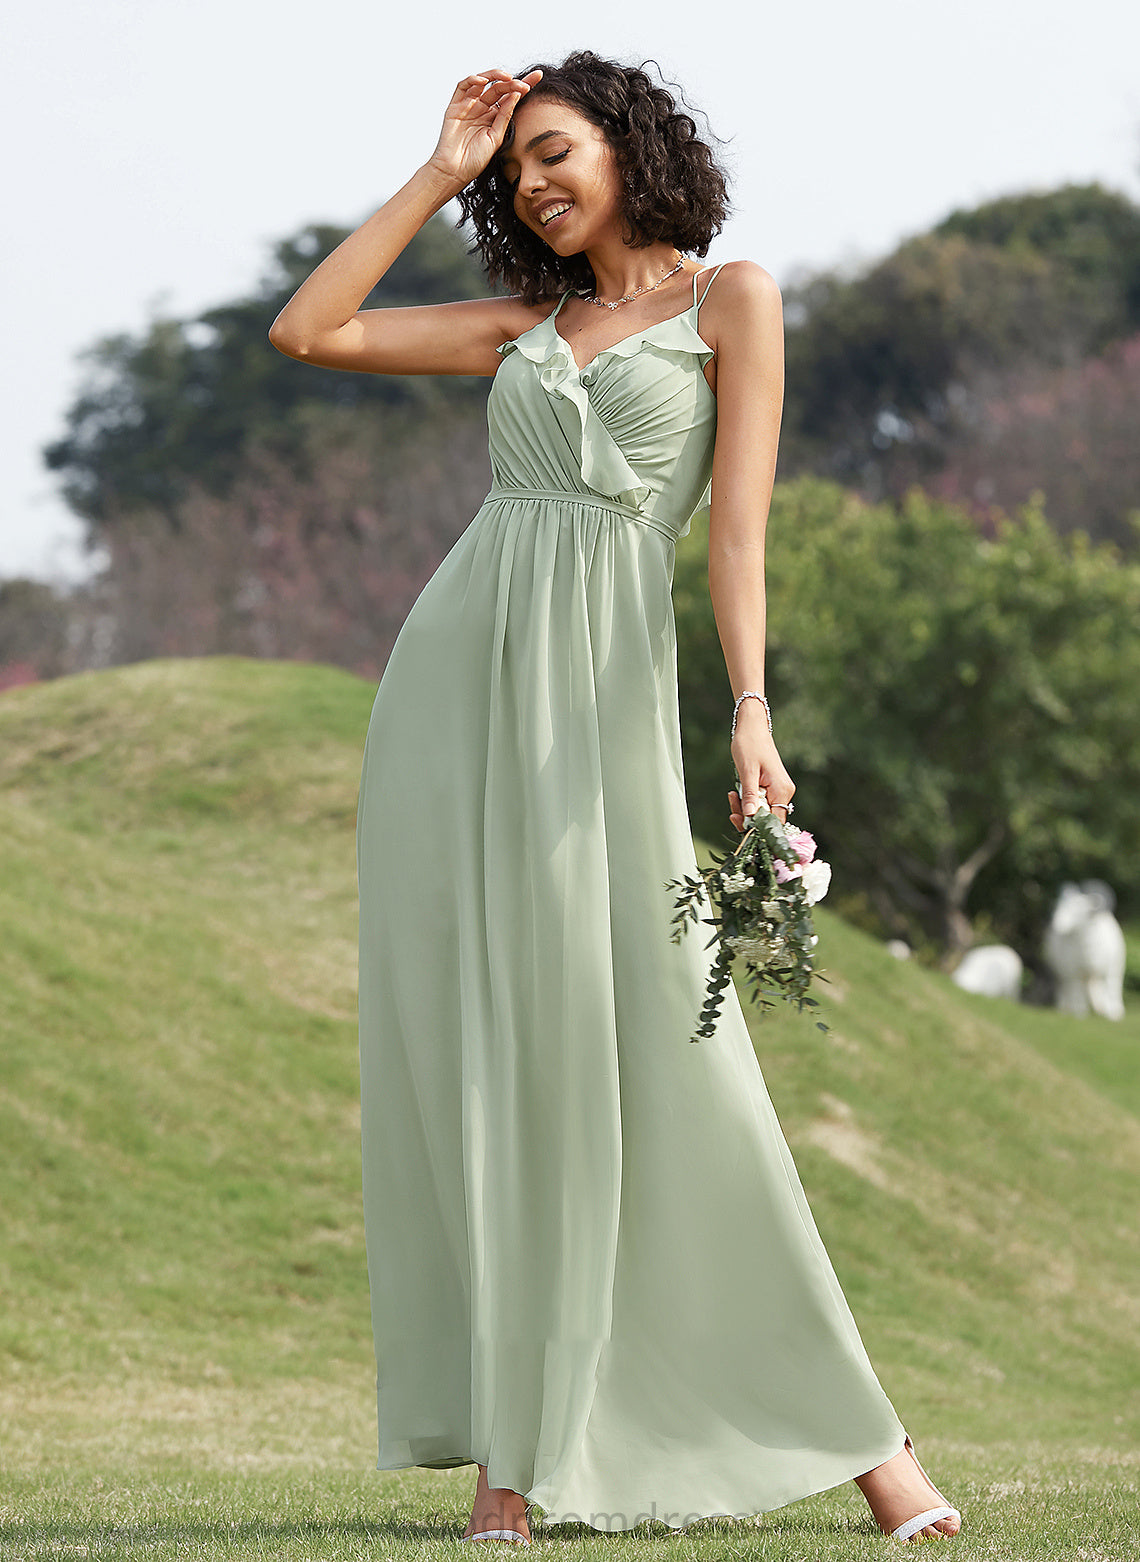 Silhouette Fabric Embellishment A-Line V-neck Ruffle Floor-Length Length Neckline Quintina A-Line/Princess Floor Length Bridesmaid Dresses